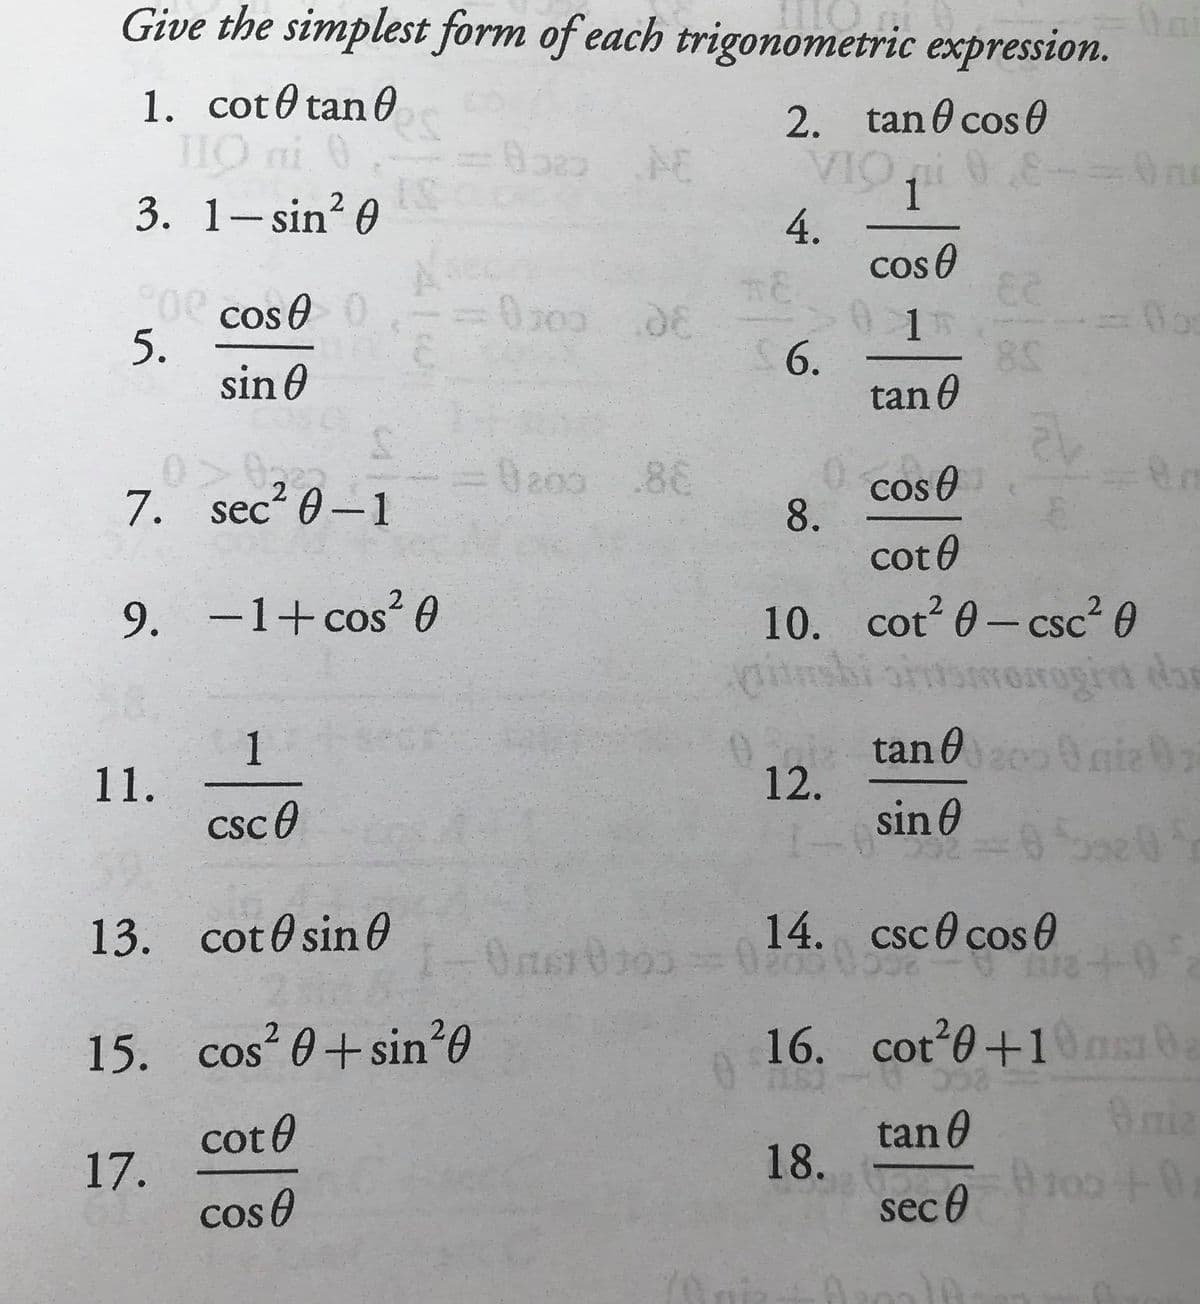 Give the simplest form of each trigonometric expression.
1. cot0 tan0
THO ni 0
3. 1- sin? 0
2. tan 0 cos 0
VIO 0
1
4.
cos 0
Oe cos e0
5.
sin 0
0200.08
6.
tan 0
Ba00 .86
cos O
8.
cot0
7. sec? 0-1
10. cot 0- csc² 0
rorrogird dan
tan 0 nie 0
9. –1+cos² 0
COS
_
CSC
1
11.
csc0
12.
sin 0
00
13. cot0 sin0
14. csc0 cos 0
Oner
+0+
2
15. cos? 0+sin²0
16. cot 0+10ns0a
COS
cot 0
17.
cos e
tan 0
18.
sec 0
